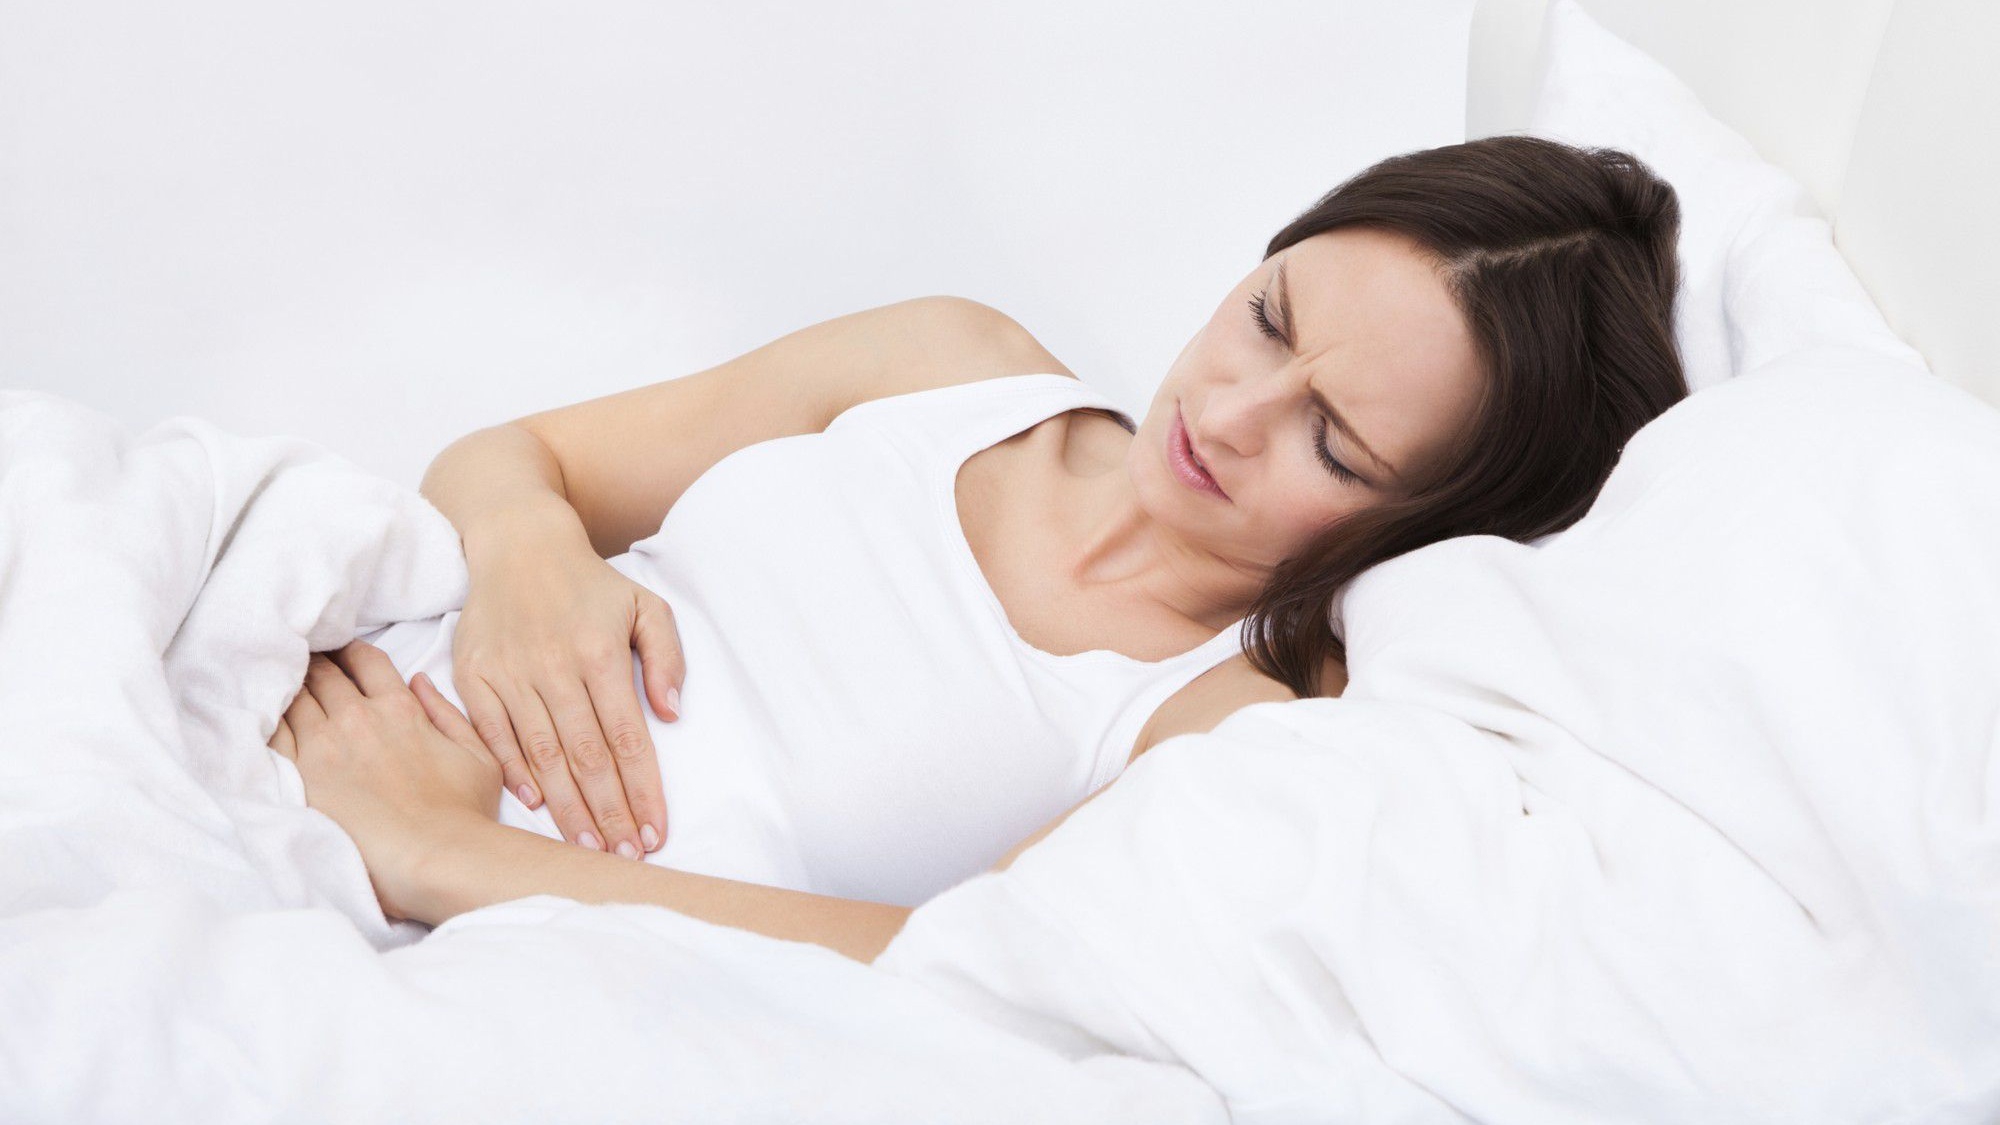 Đau âm ỉ bụng dưới có phải là dấu hiệu bất thường trong thai kỳ hay không?